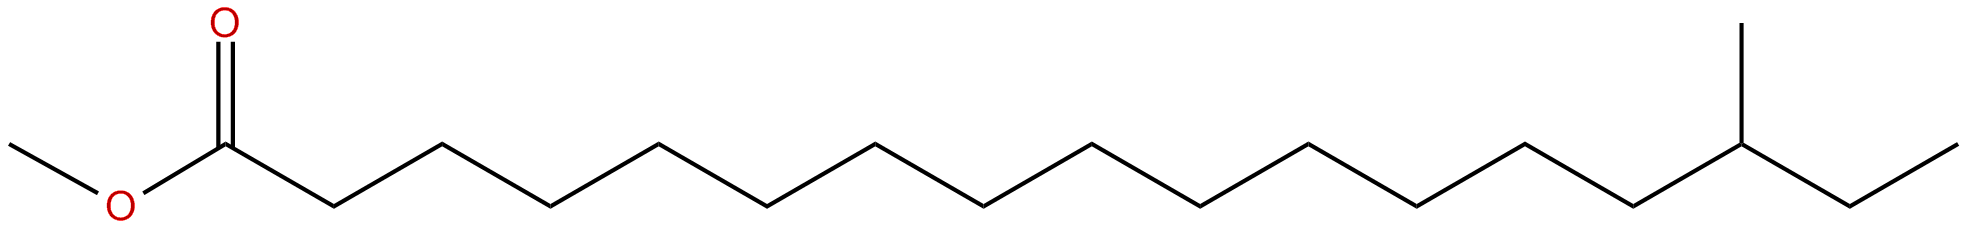 Image of methyl 15-methylheptadecanoate